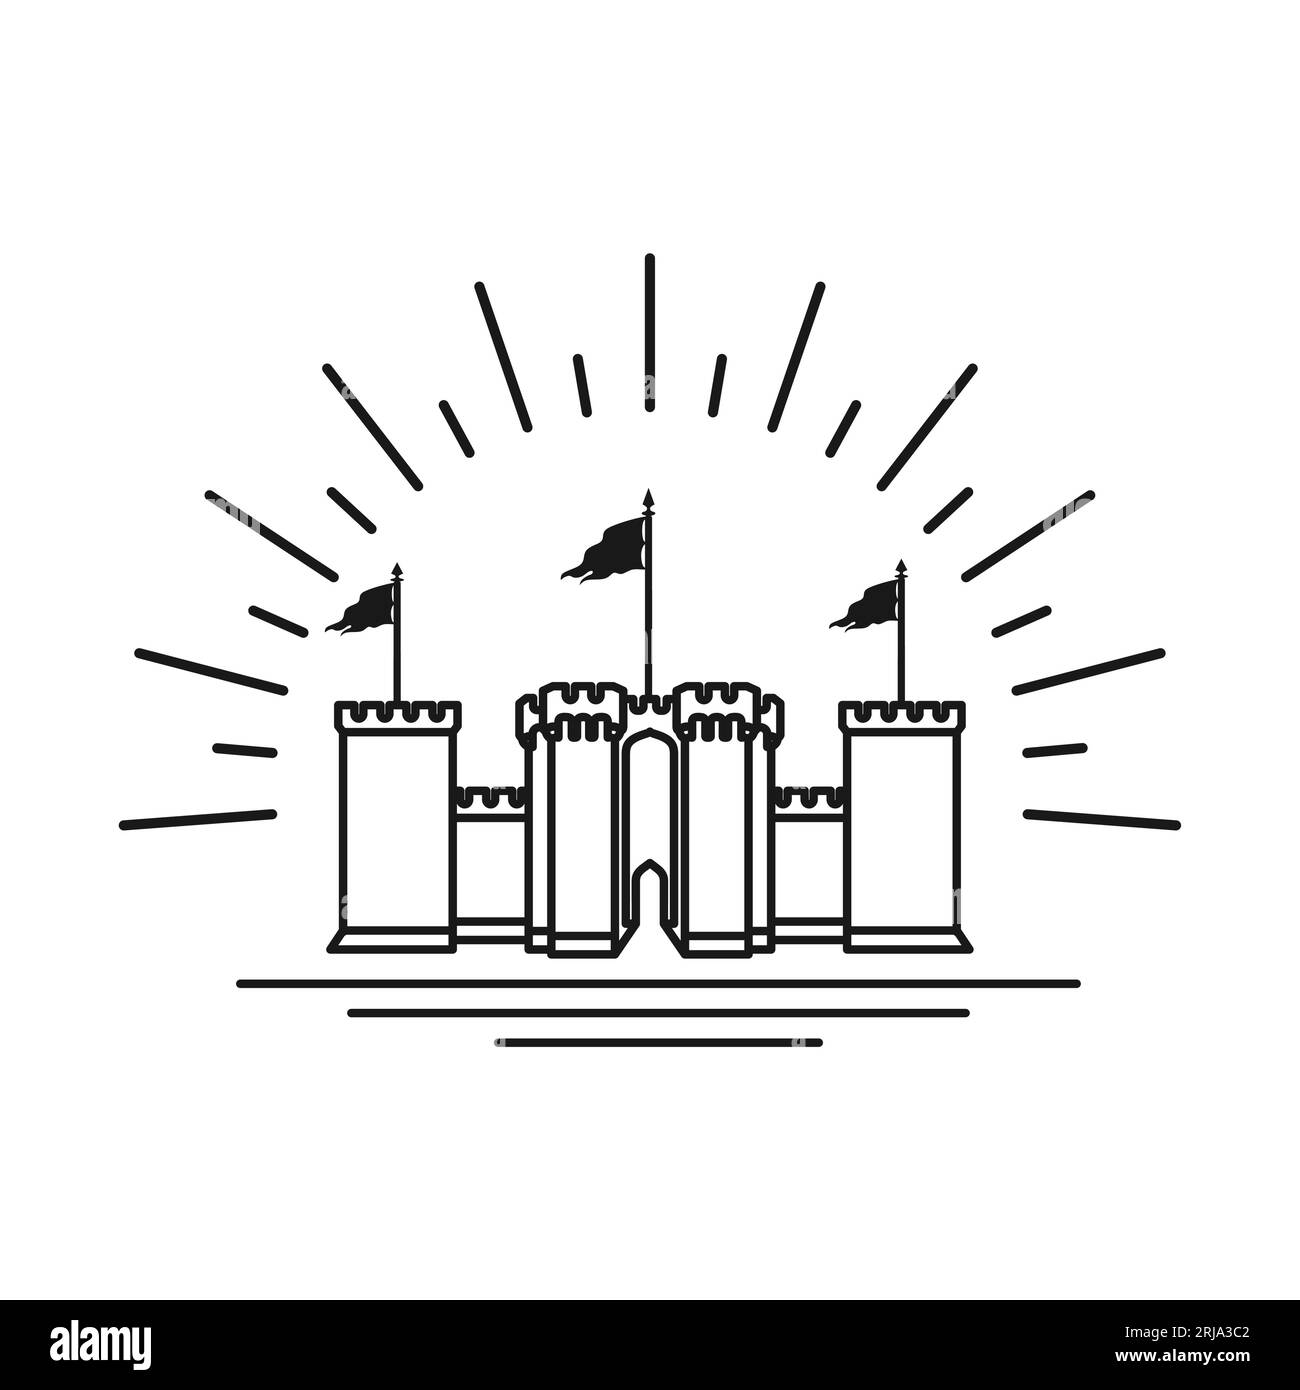 Inspiration minimaliste du logo d'art Castle Line Illustration de Vecteur